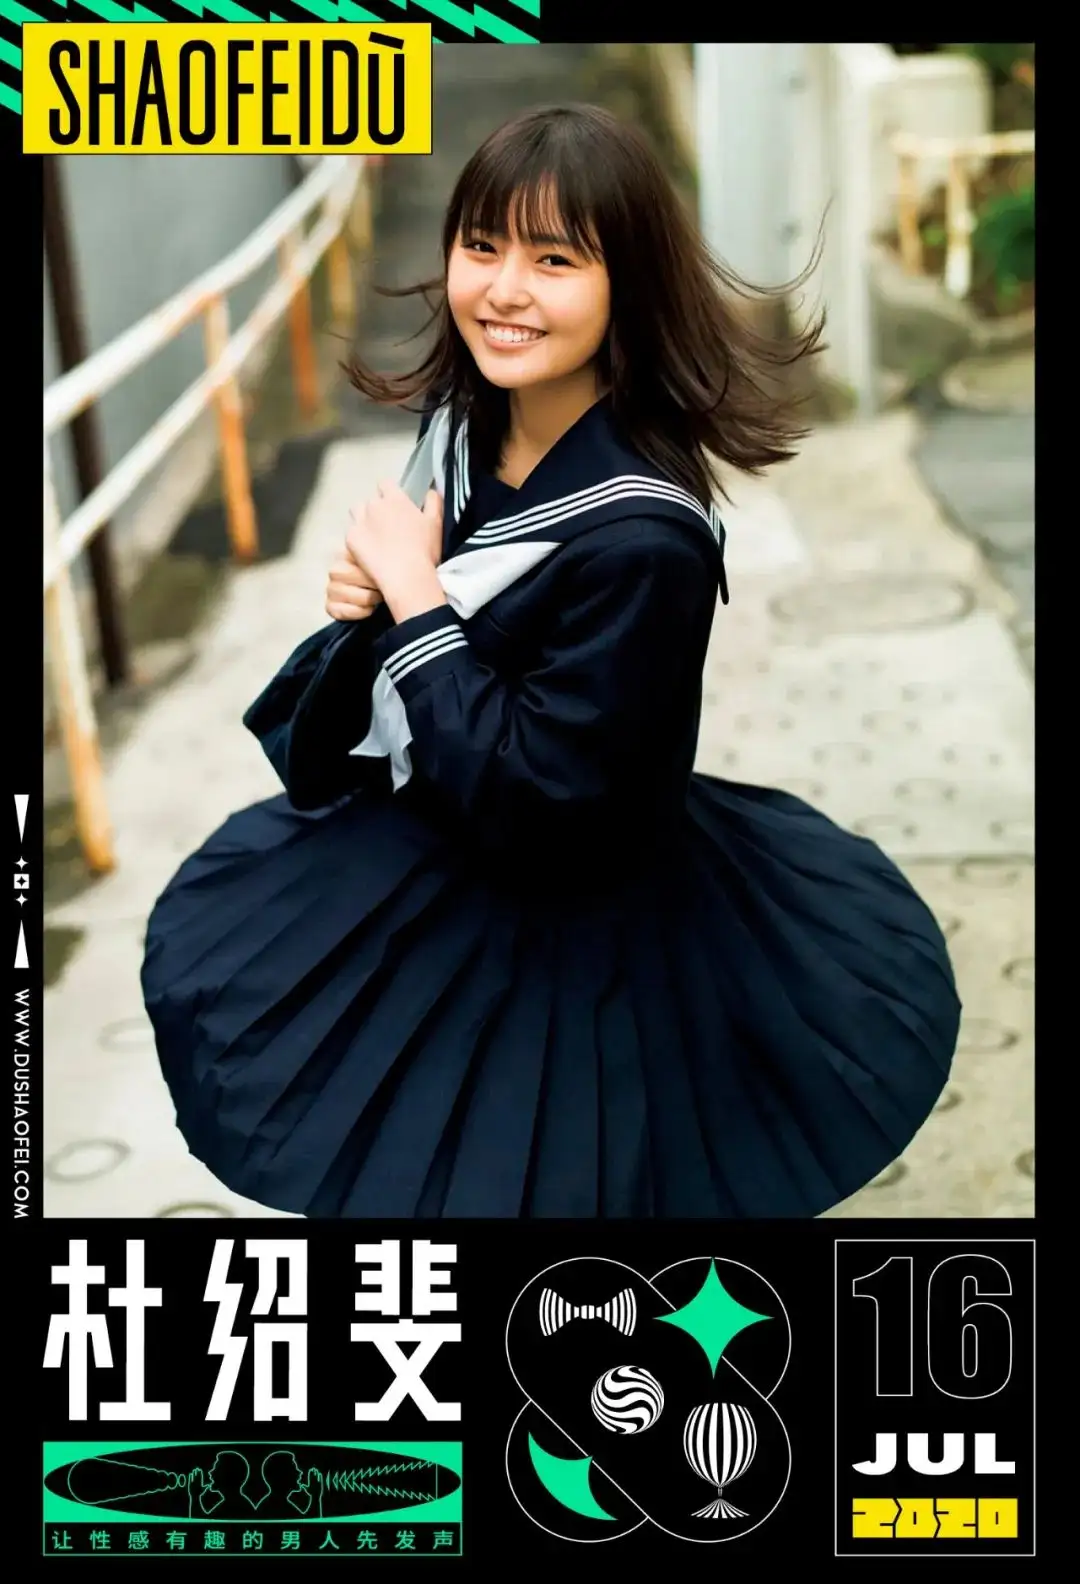 日本少女不敢穿的JK制服，中国姑娘并不在乎- 知乎